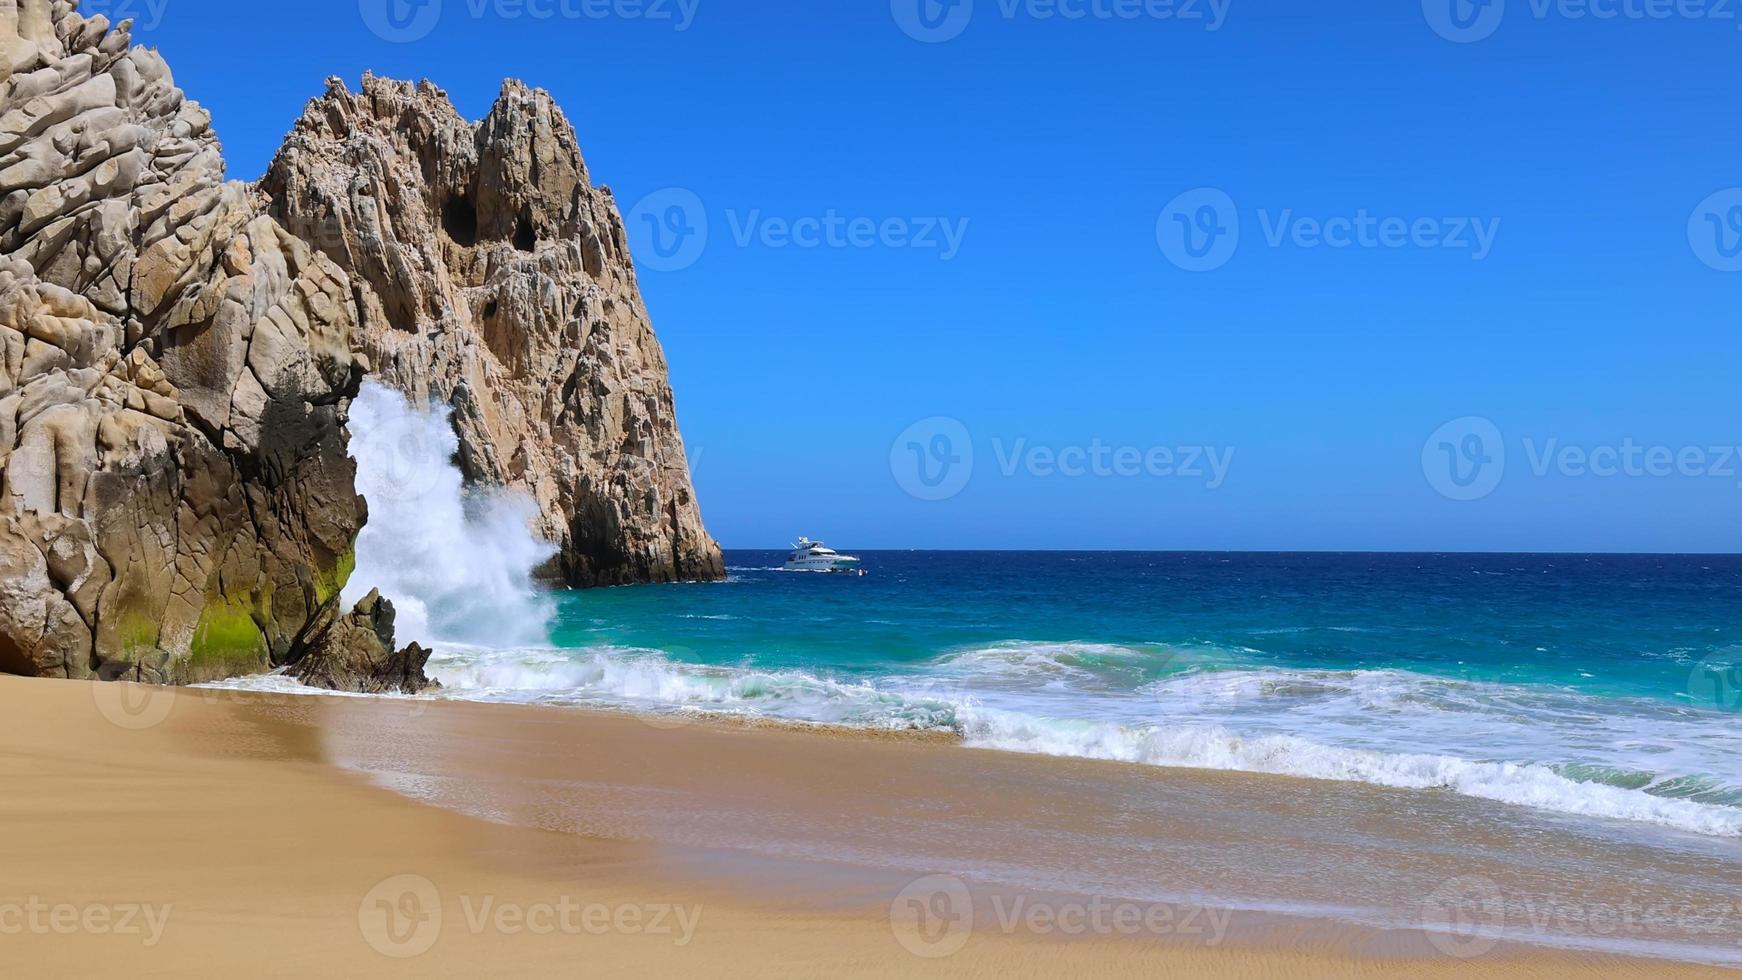 Scenic travel destination Playa del Divorcio, Divorce Beach located near scenic Arch of Cabo San Lucas photo